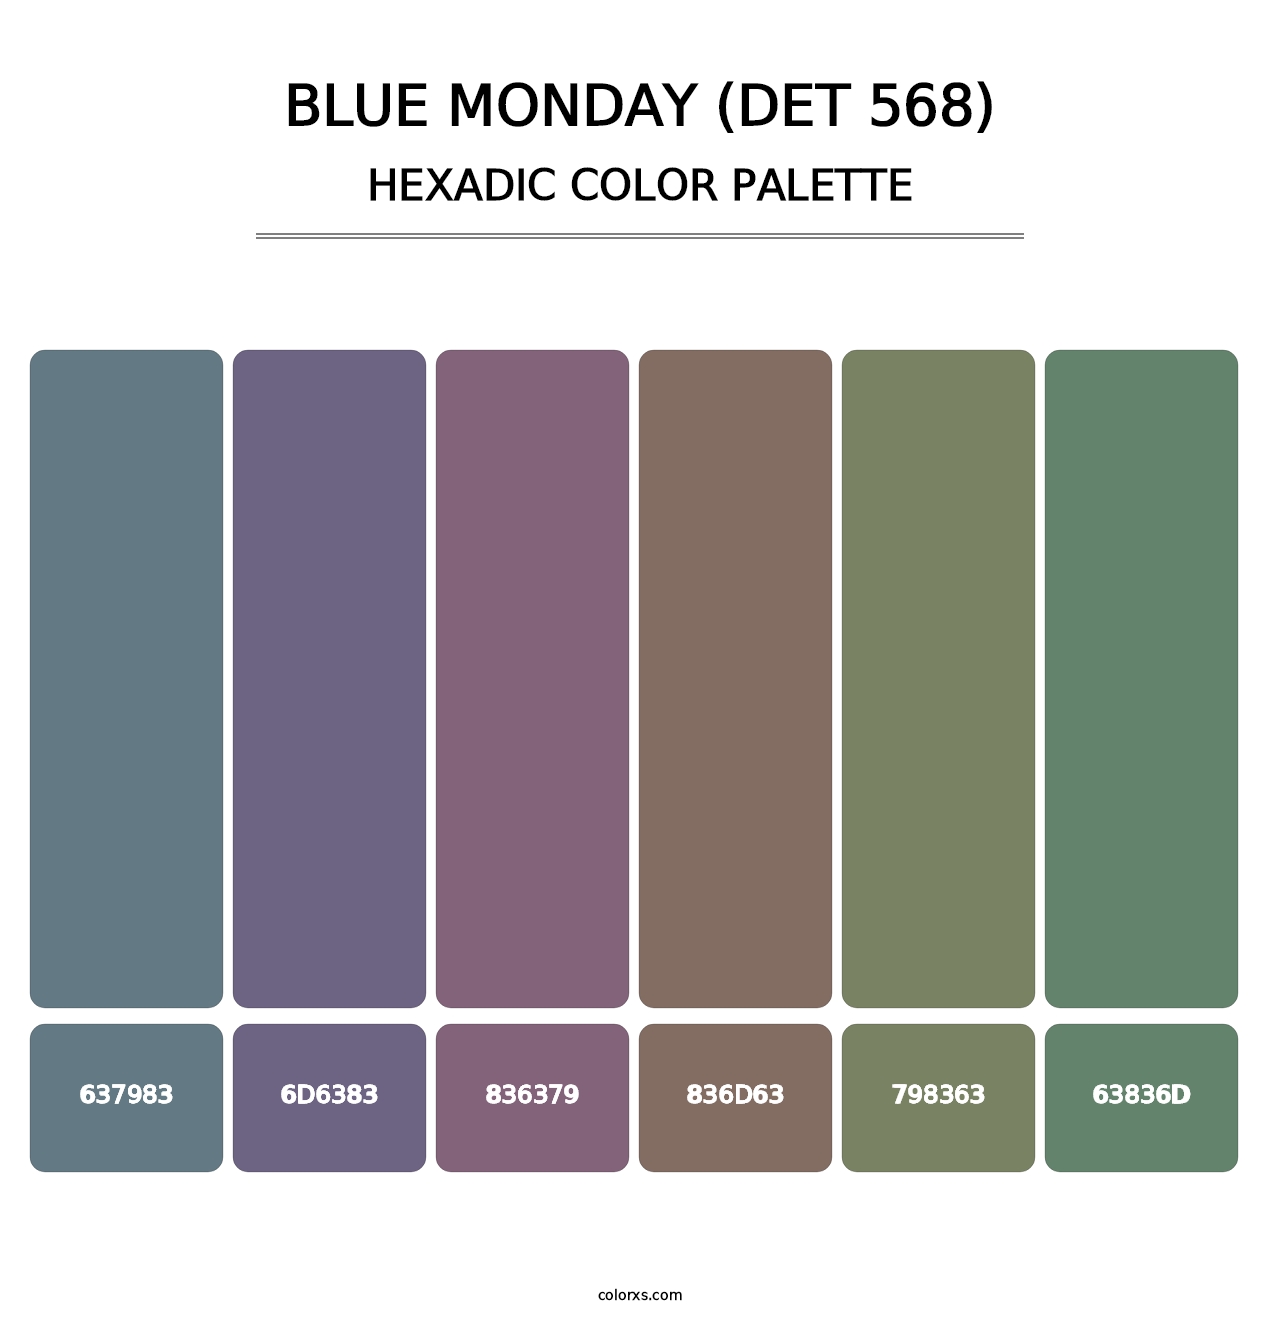 Blue Monday (DET 568) - Hexadic Color Palette